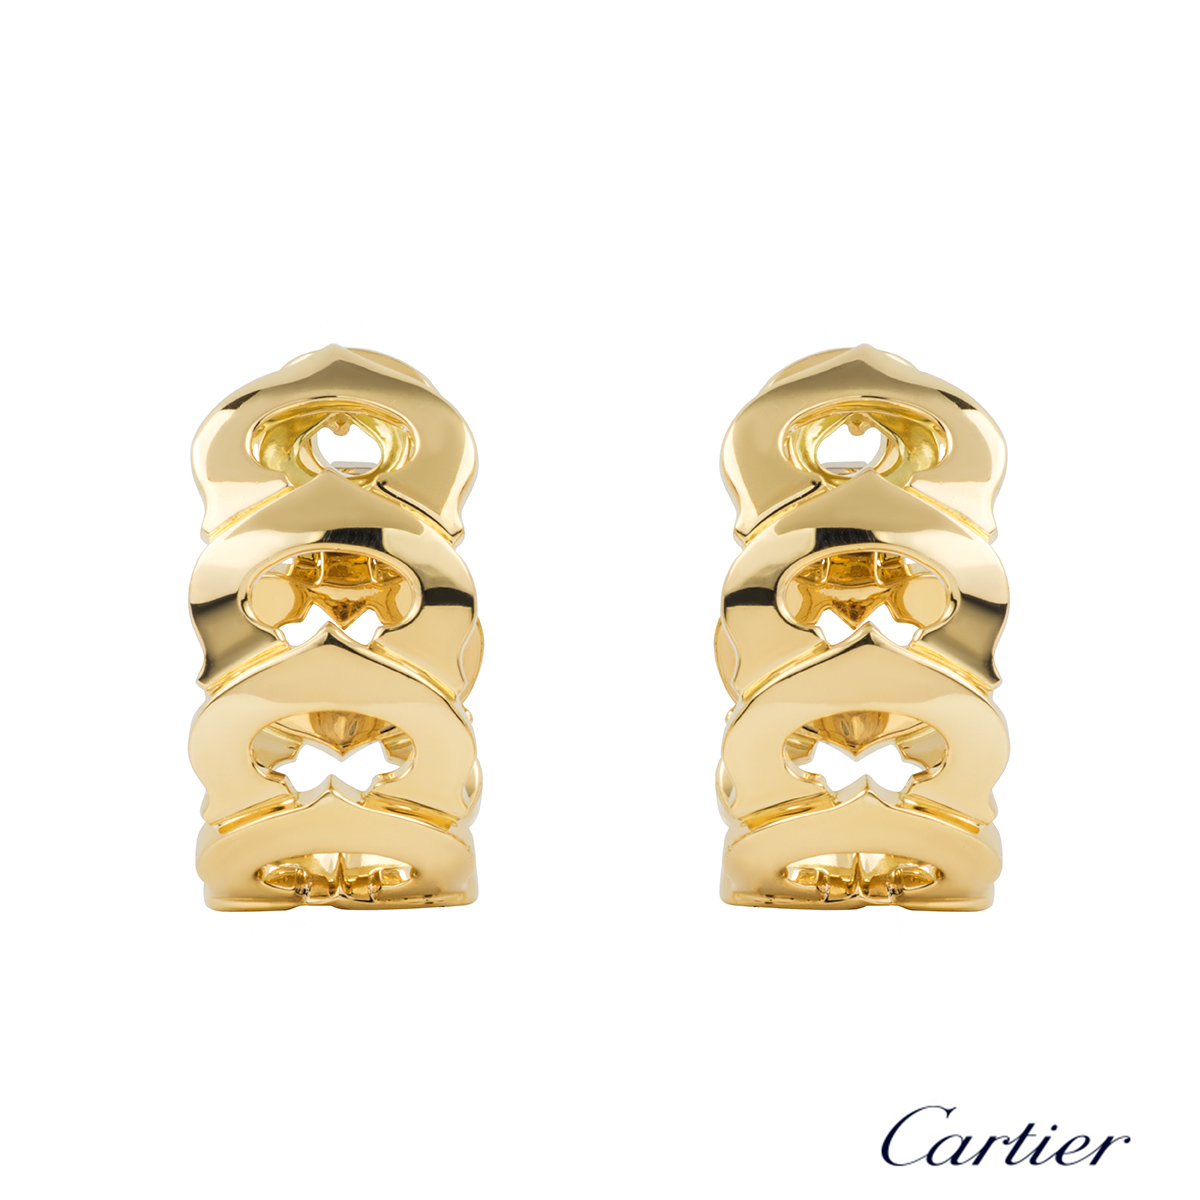 c de cartier earrings price